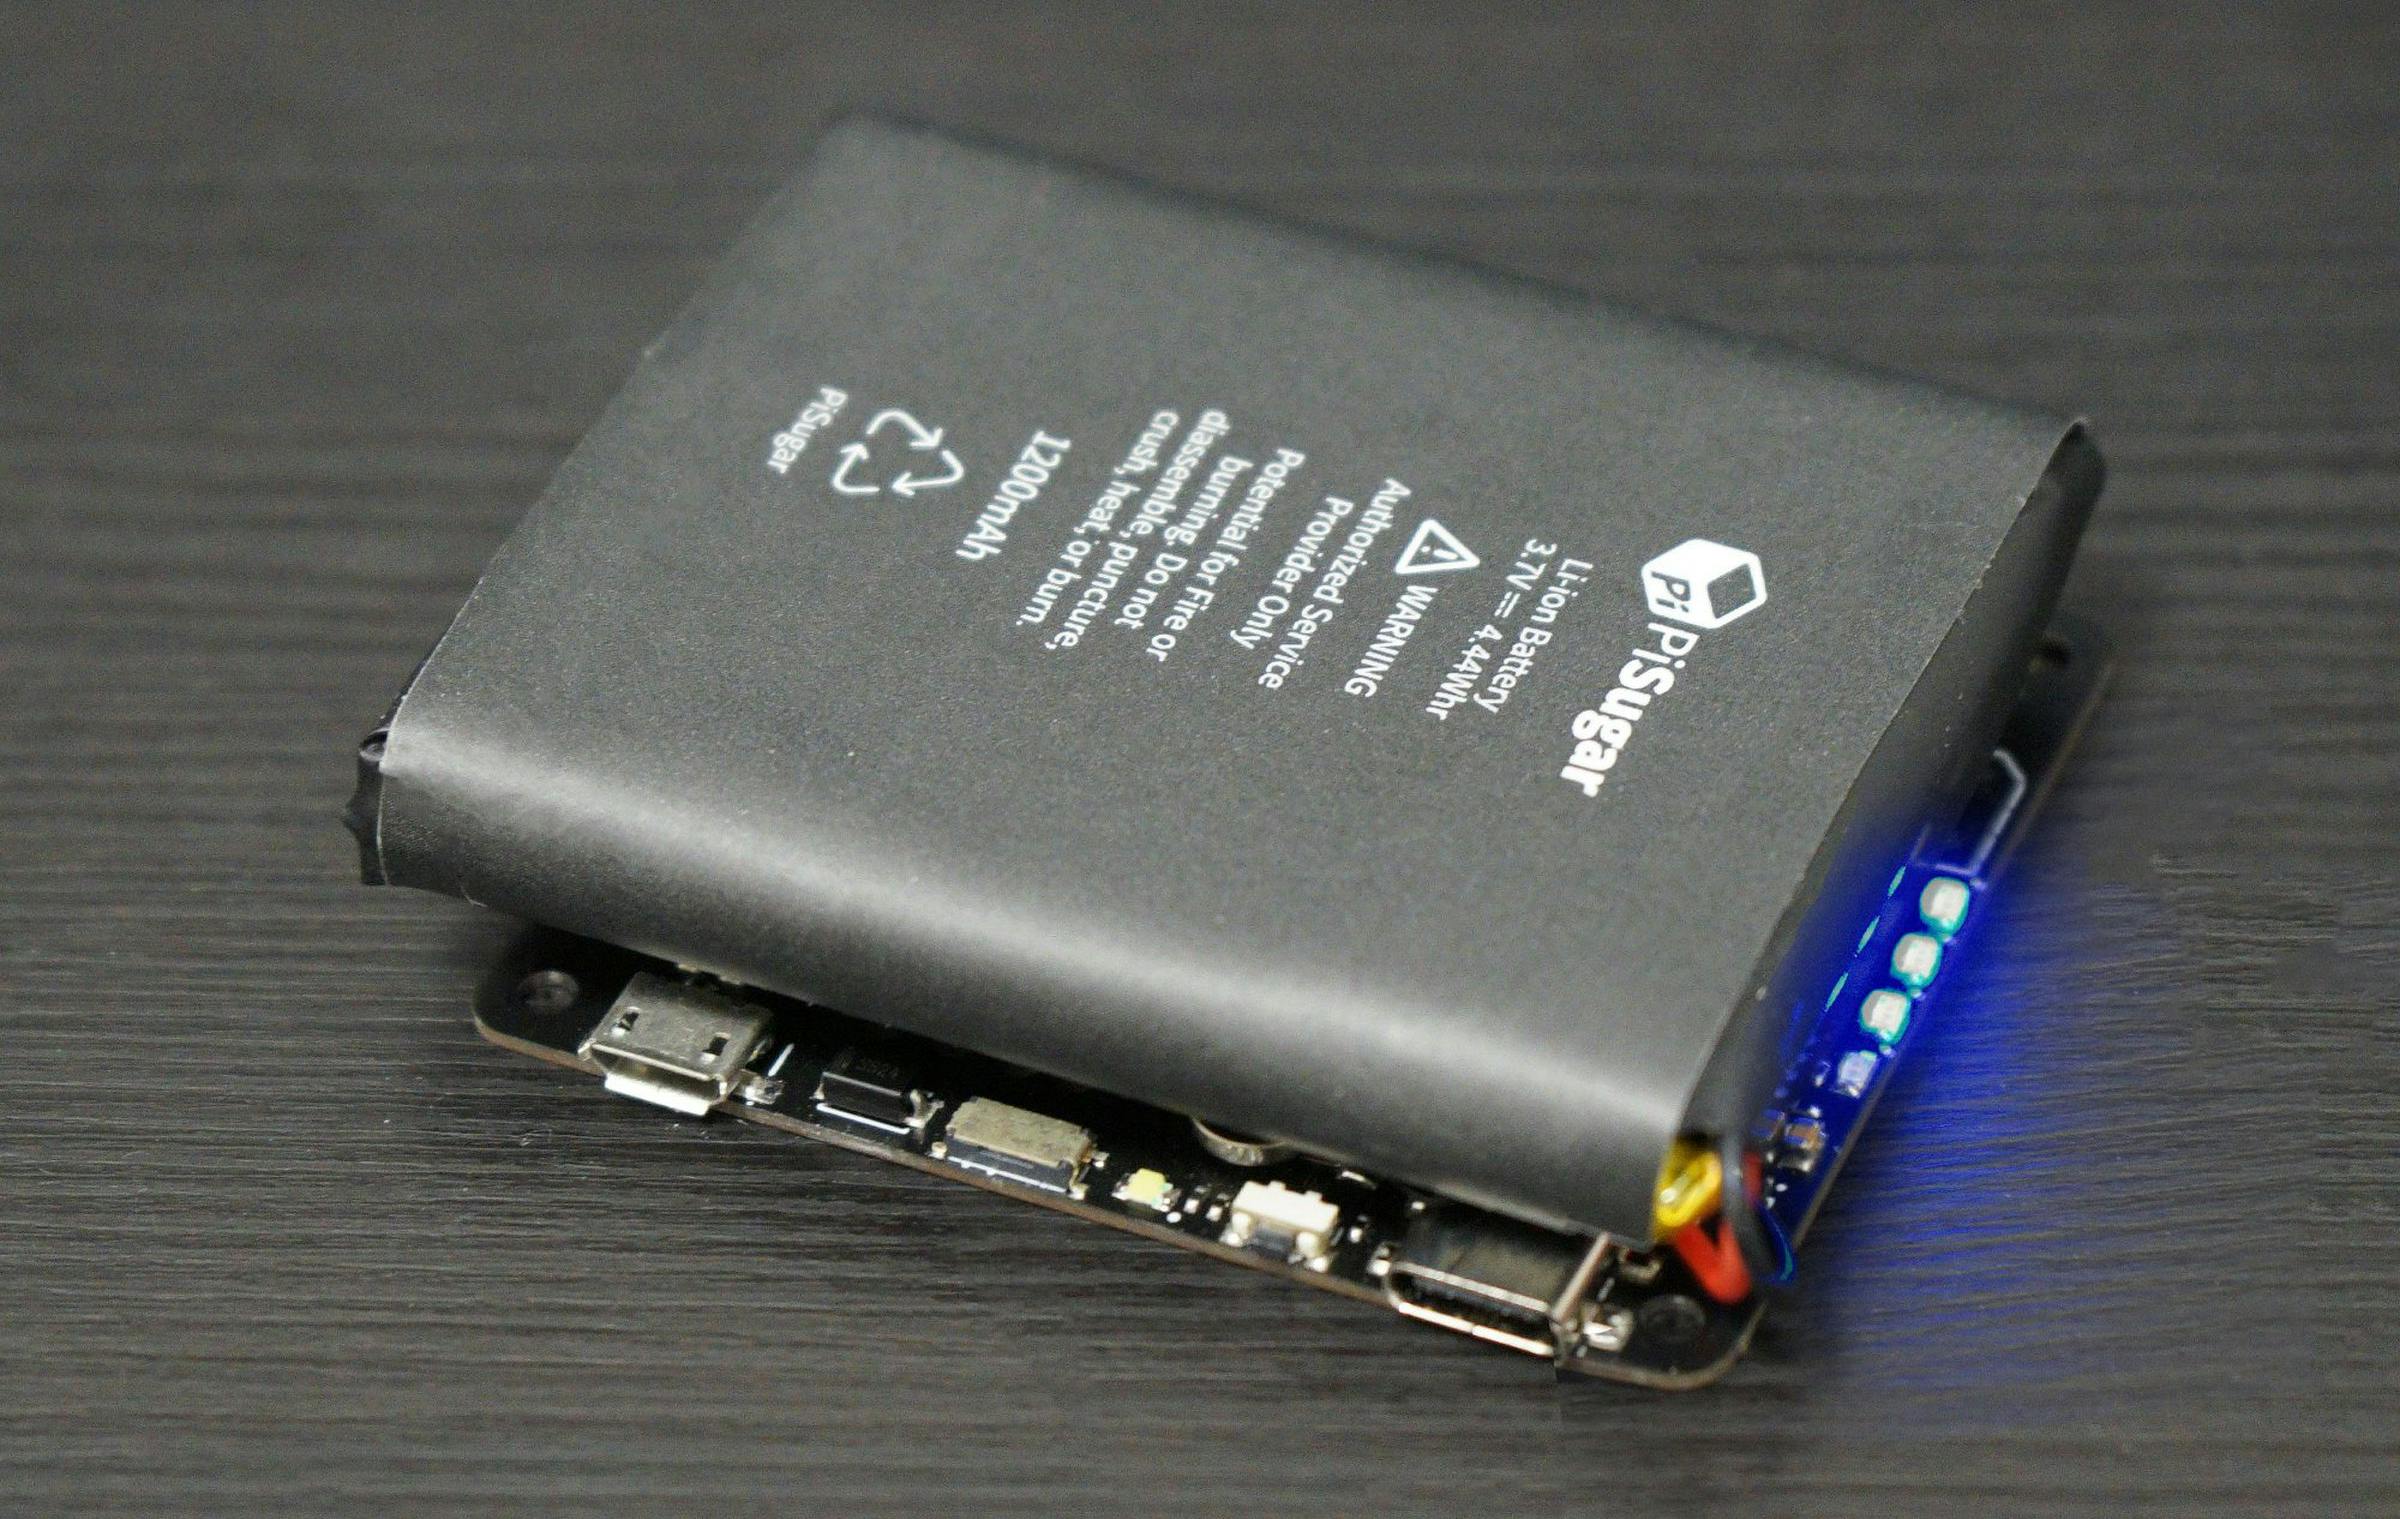 pi-Zero W//WH Accessoires de mod/èle 1200ma ne Pas inclure Raspberry pi Pisugar Portable 900 mAh//1200 mAh Batterie au Lithium Module de Puissance pour Raspberry pi-Zero